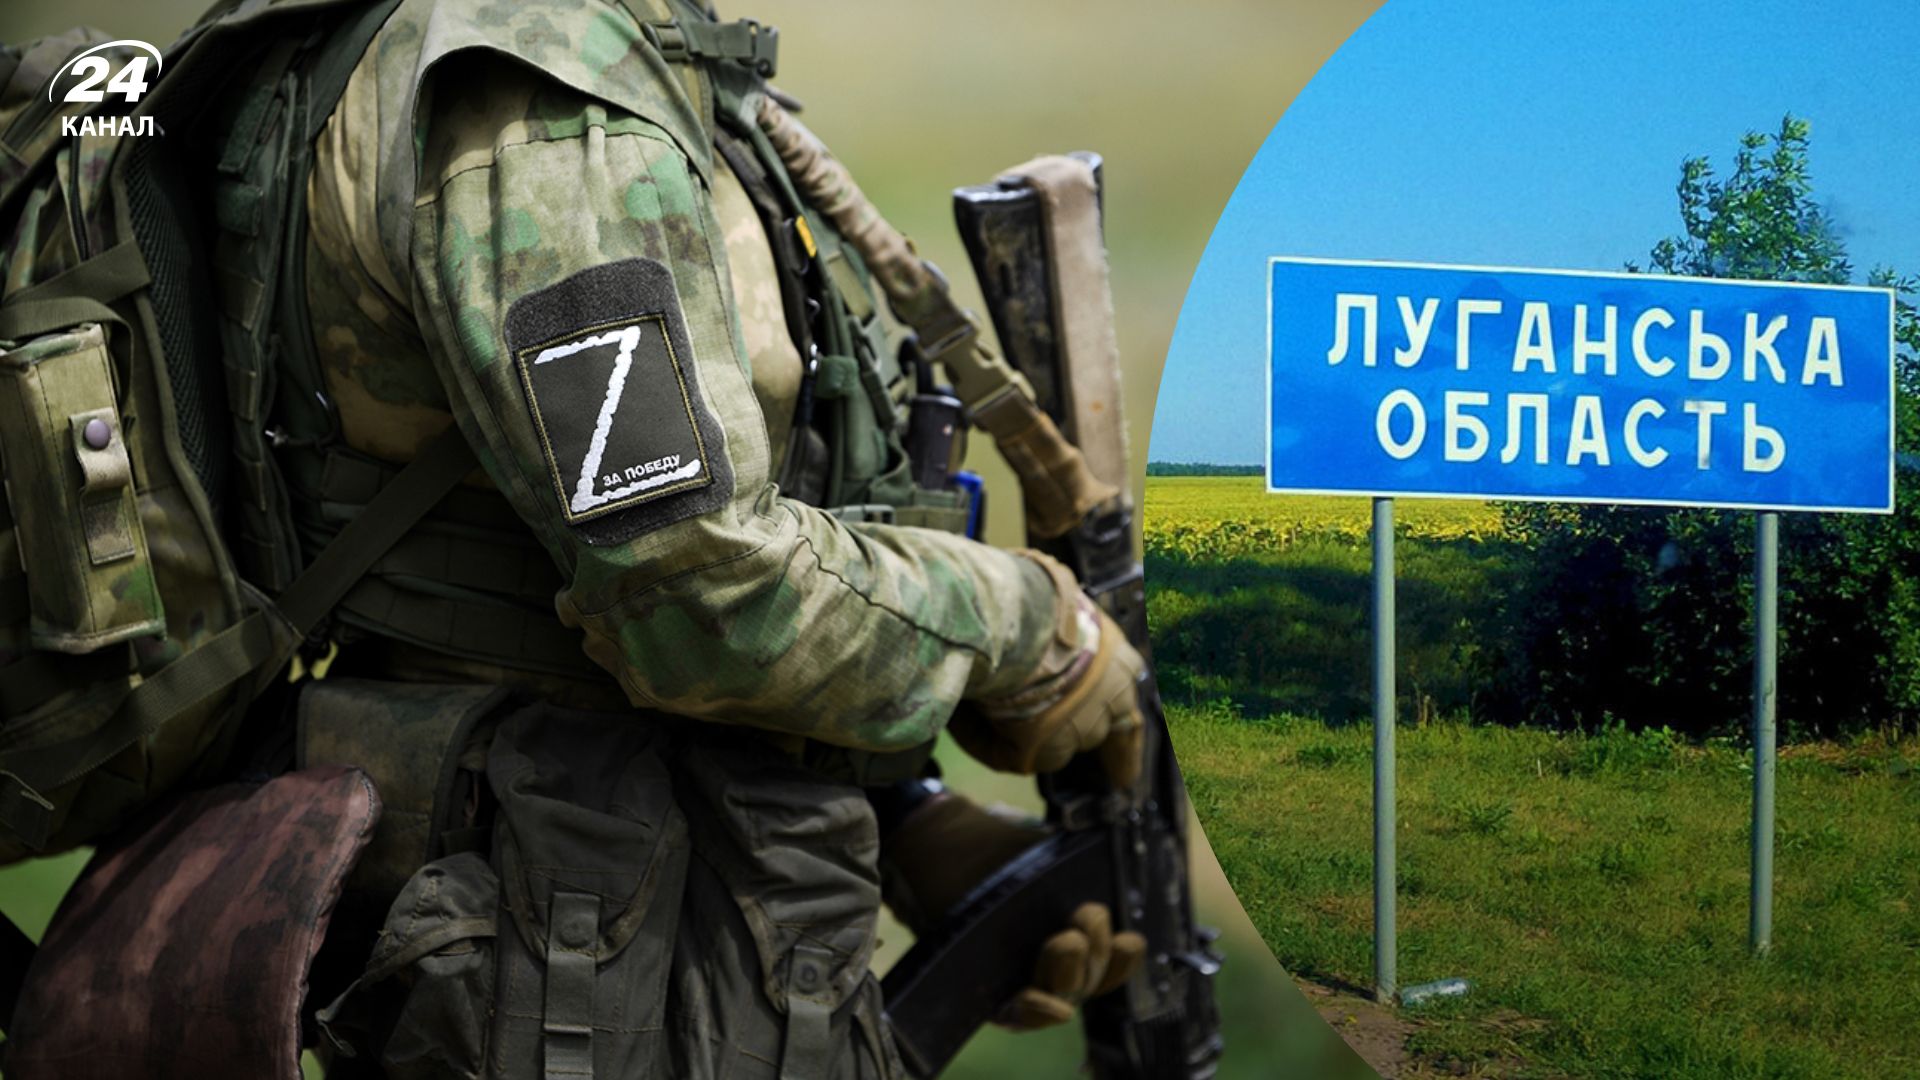 Контрнаступление ВСУ - в Луганской области оккупанты вывозят людей, чтобы скрыть оборонные сооружения